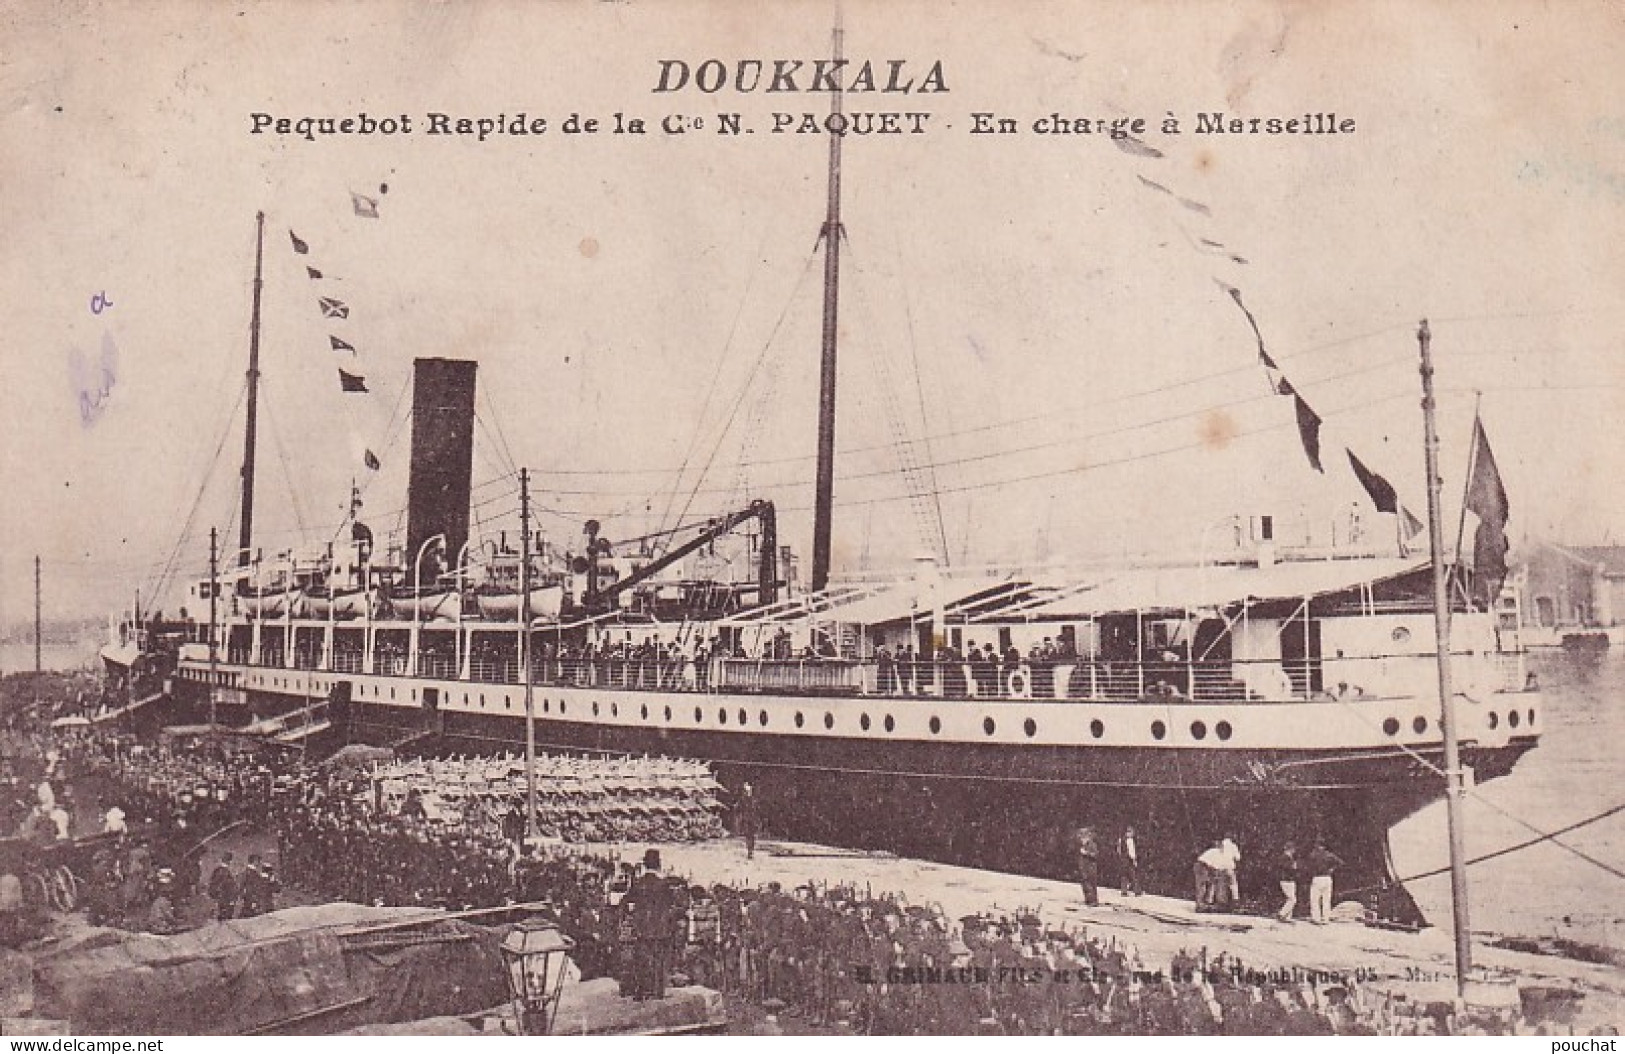 XXX Nw-(13) DOUKKALA - PAQUEBOT RAPIDE DE LA Cie N. PAQUET - EN CHARGE A MARSEILLE - Passagiersschepen